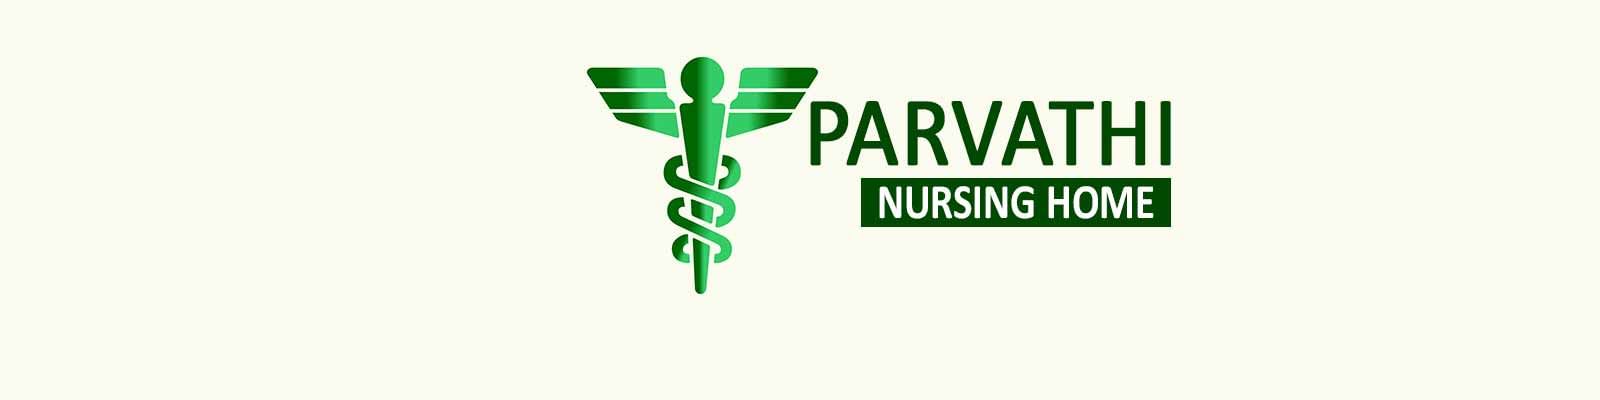 Parvathi Nursing Home